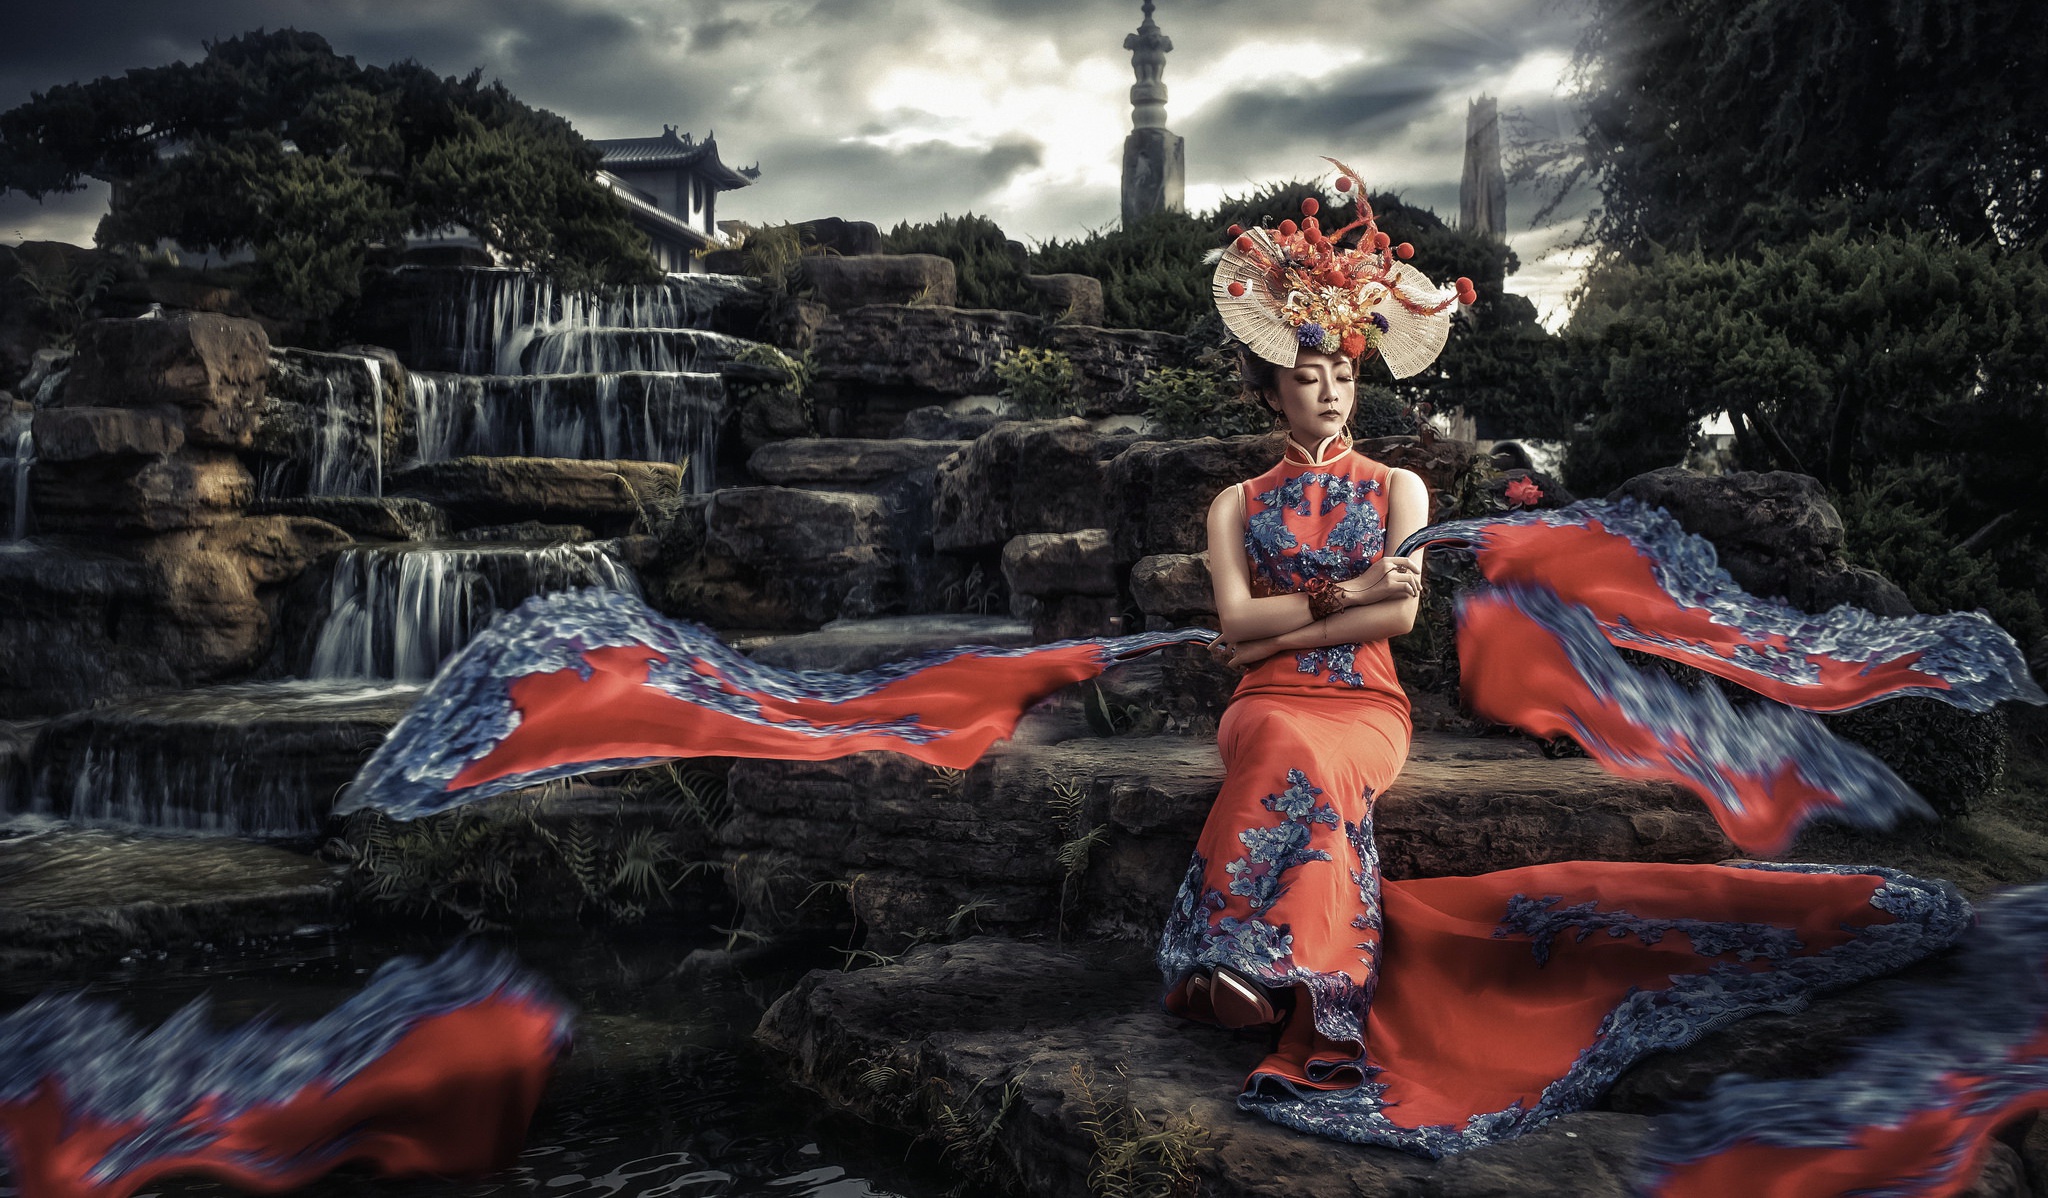 Фото профессиональных моделей в азиатском стиле. Природа Азии с красными девушками. Красивые женщины в традиционных костюмах обои. Азиатская женская племенная одежда арты. Мод asia